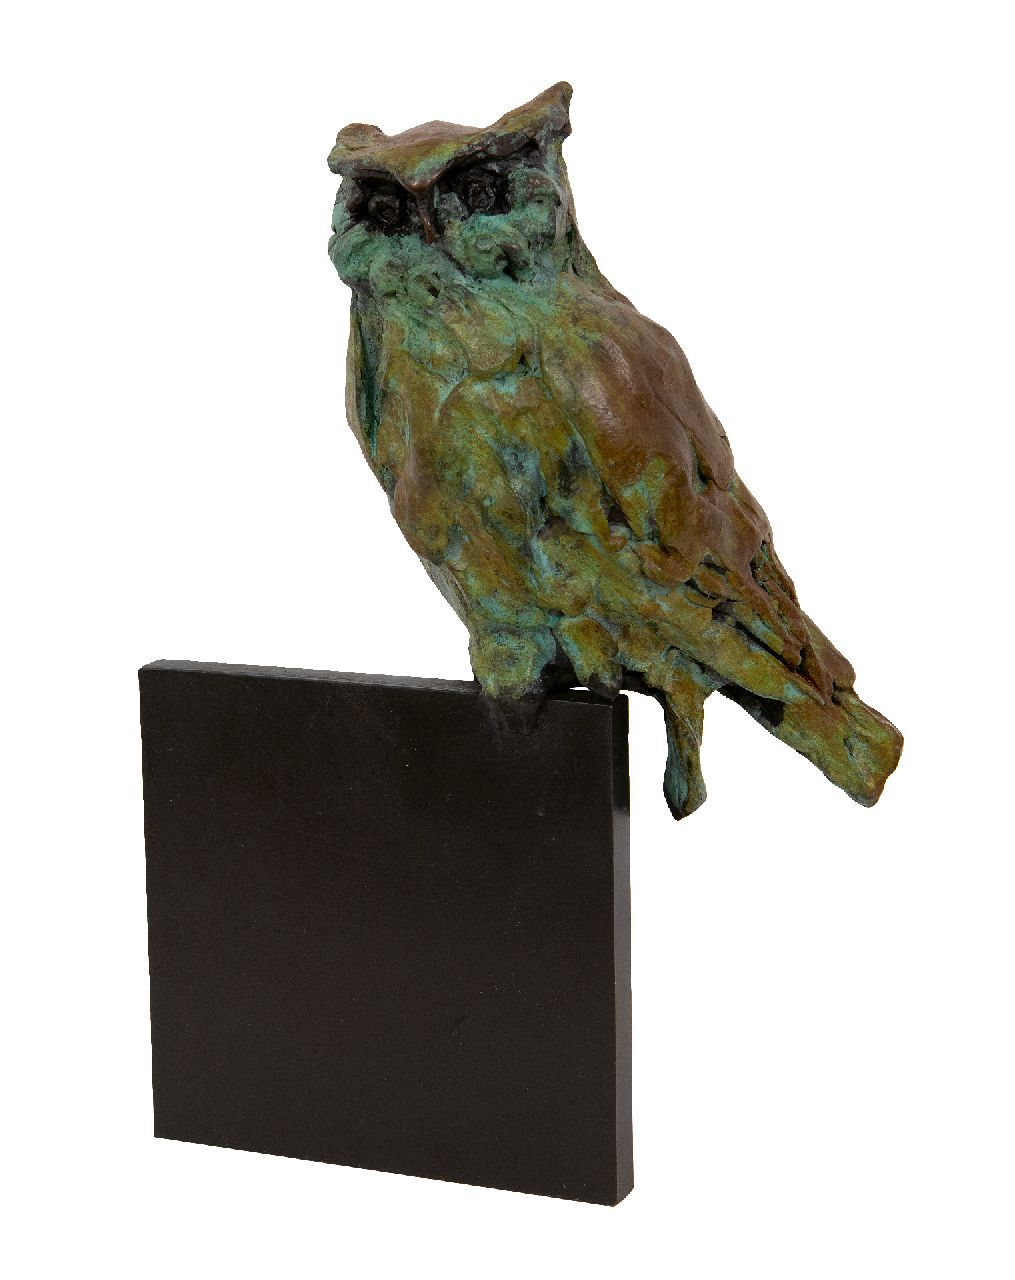 Laan J. van der | Jacqueline van der Laan, Resting eagle owl, Patinierte Bronze 21,0 x 14,0 cm, gesigneerd gemonogrammeerd achterzijde